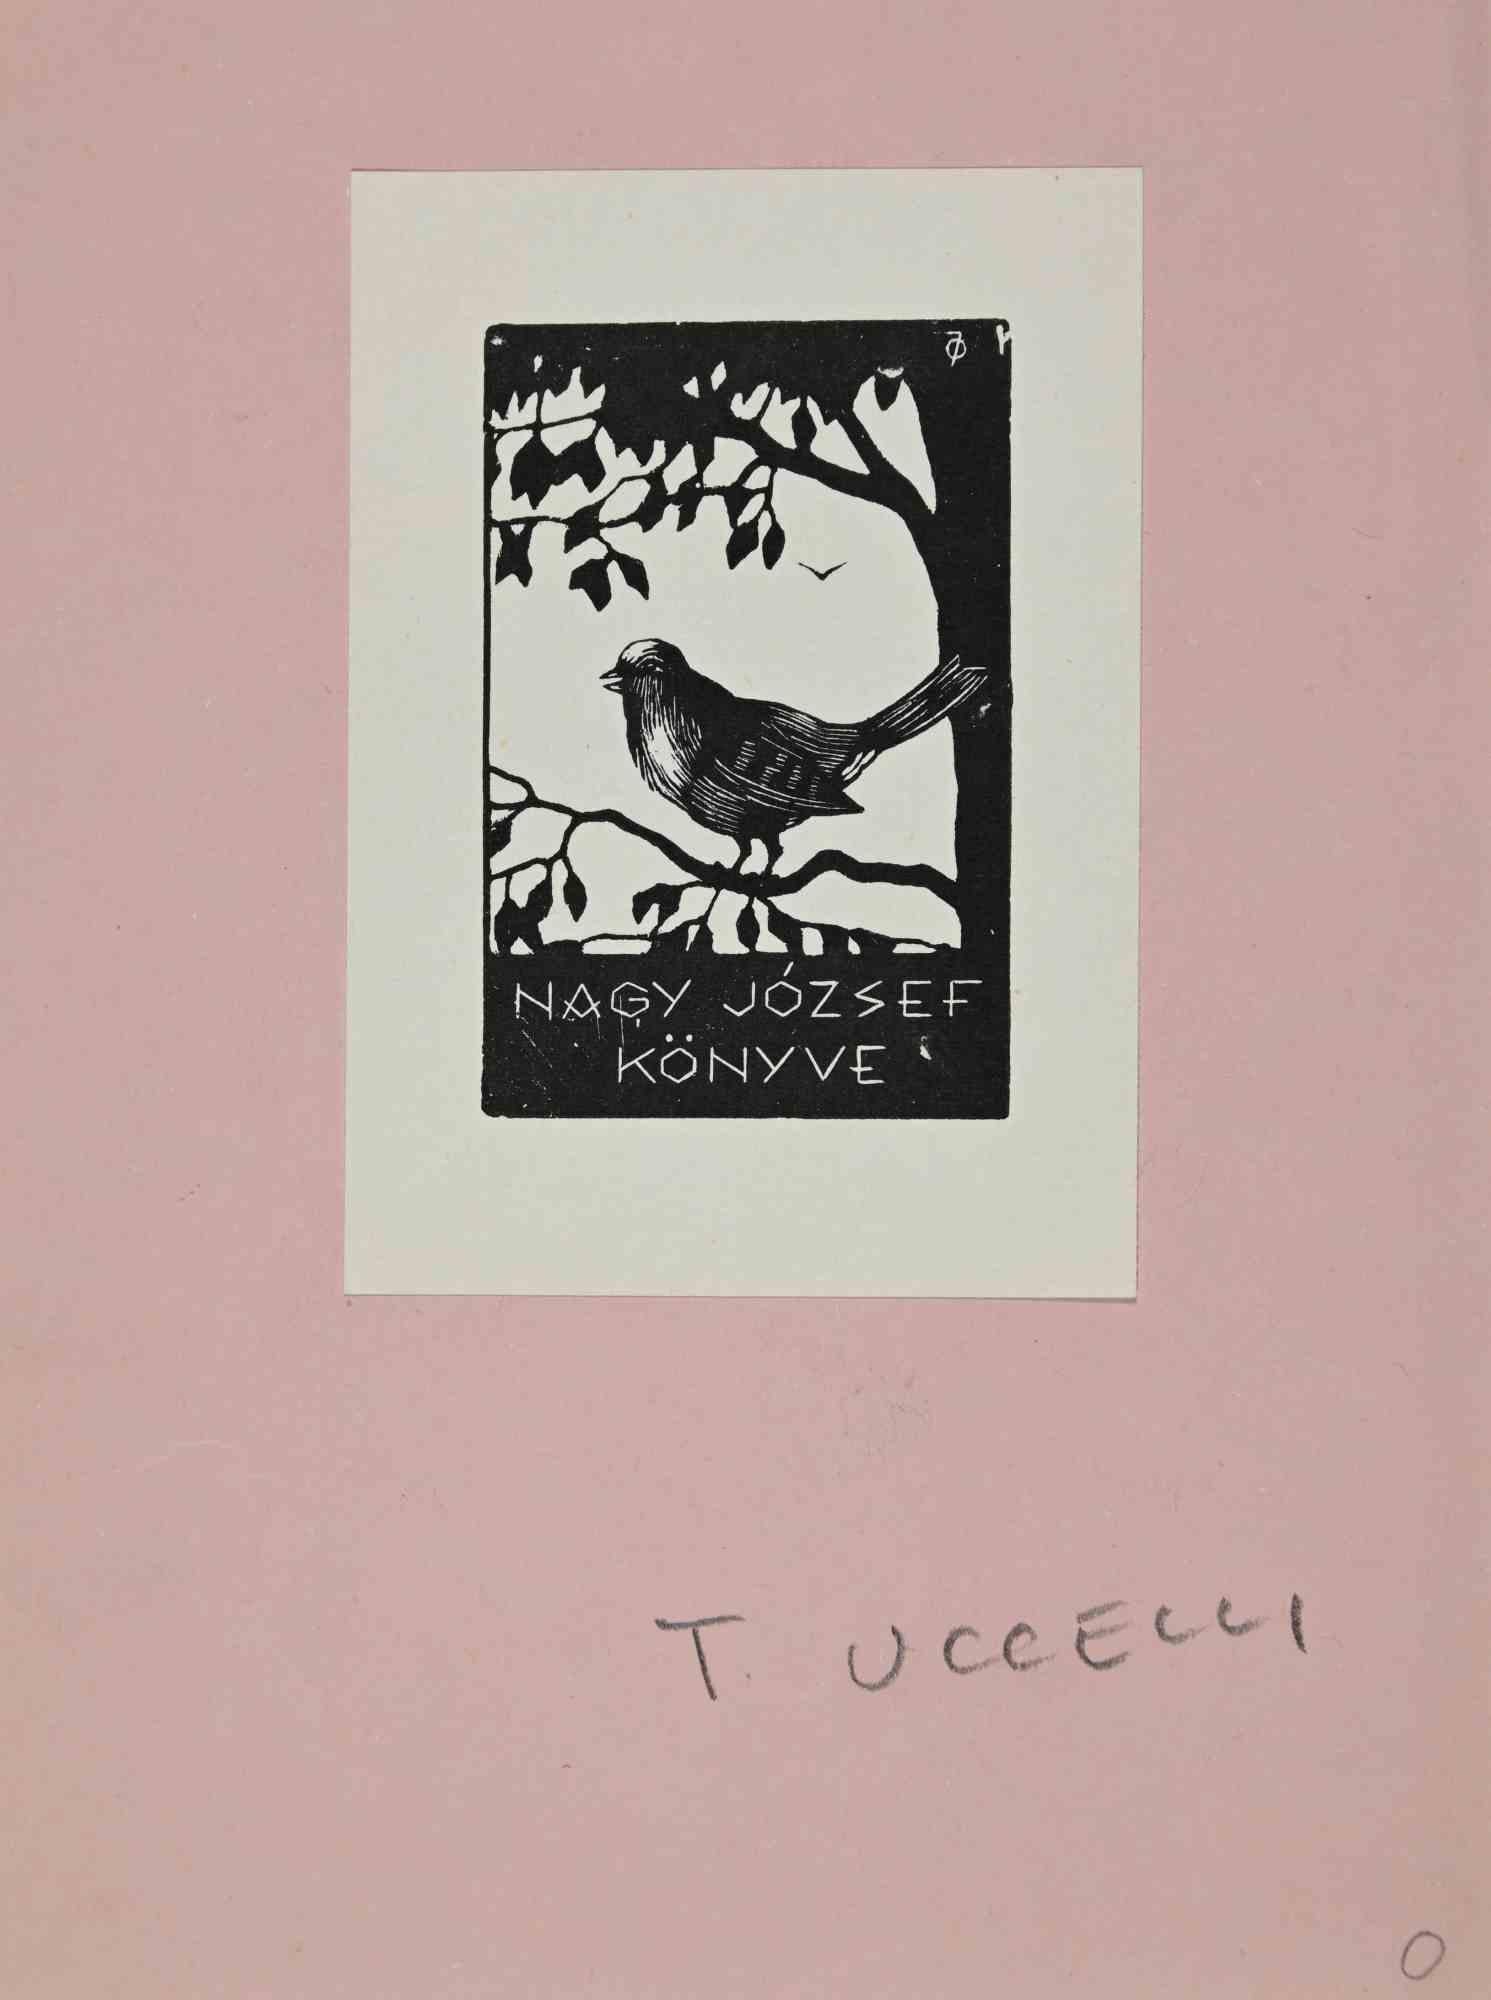 Ex libris - Nagy József Könyve ist ein Kunstwerk des ungarischen Künstlers Istvàn Olàh aus dem Jahr 1932. 

Holzschnitt auf Elfenbeinpapier.  Signiert auf der Platte und datiert auf der Rückseite. Das Werk ist auf rosa Karton geklebt.

Abmessungen